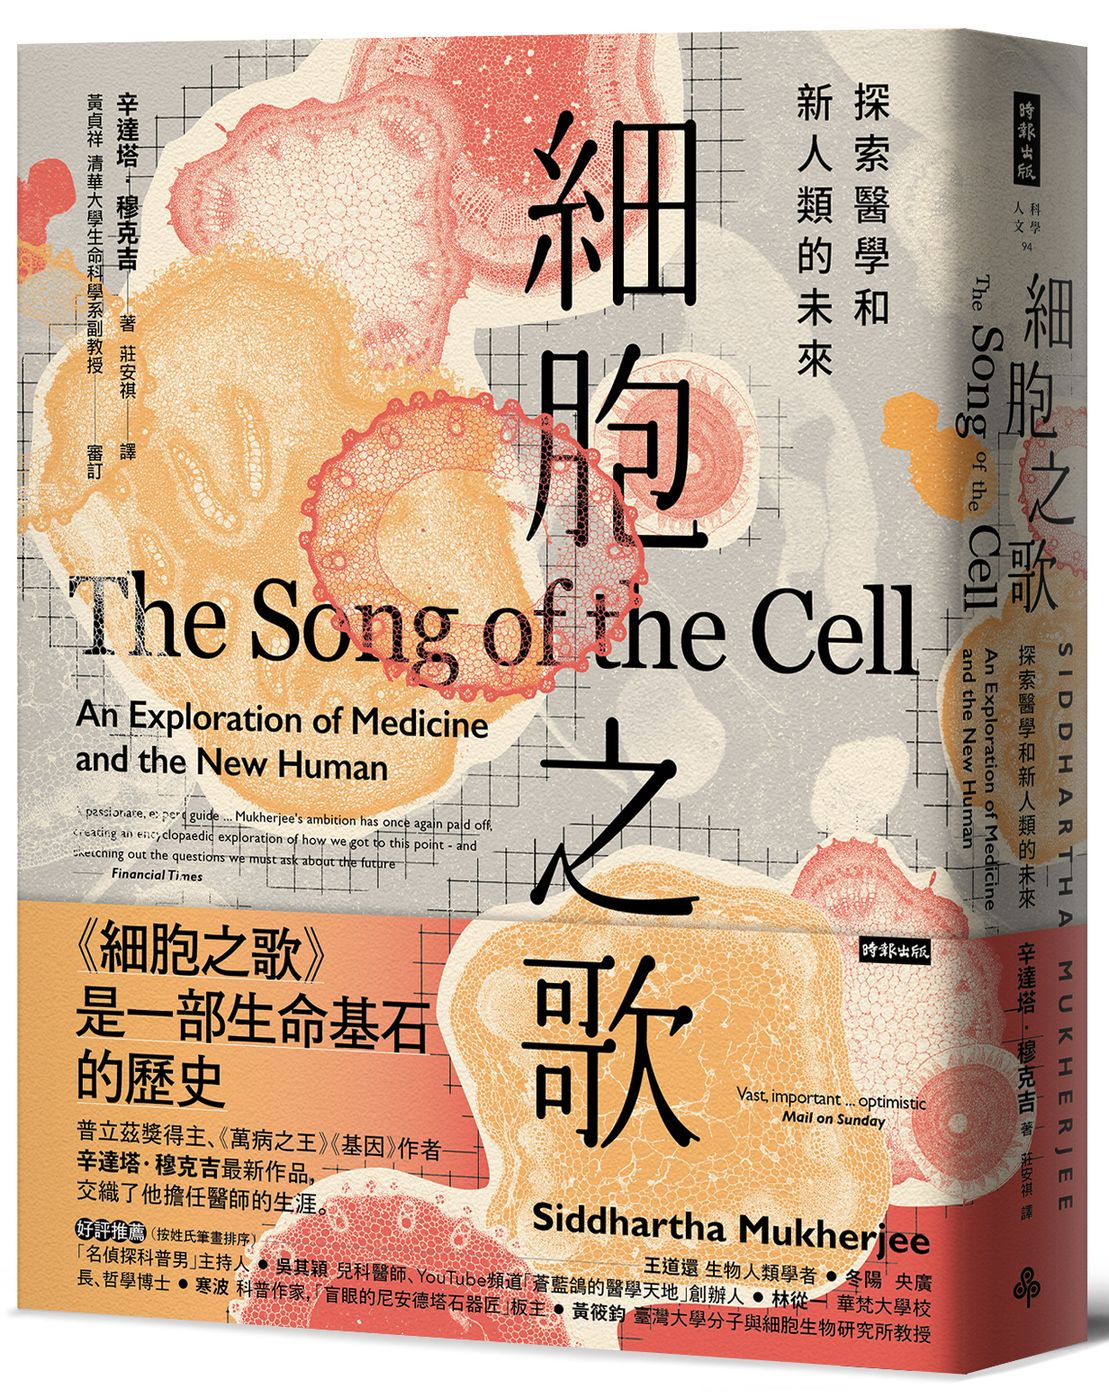 細胞之歌: 探索醫學和新人類的未來